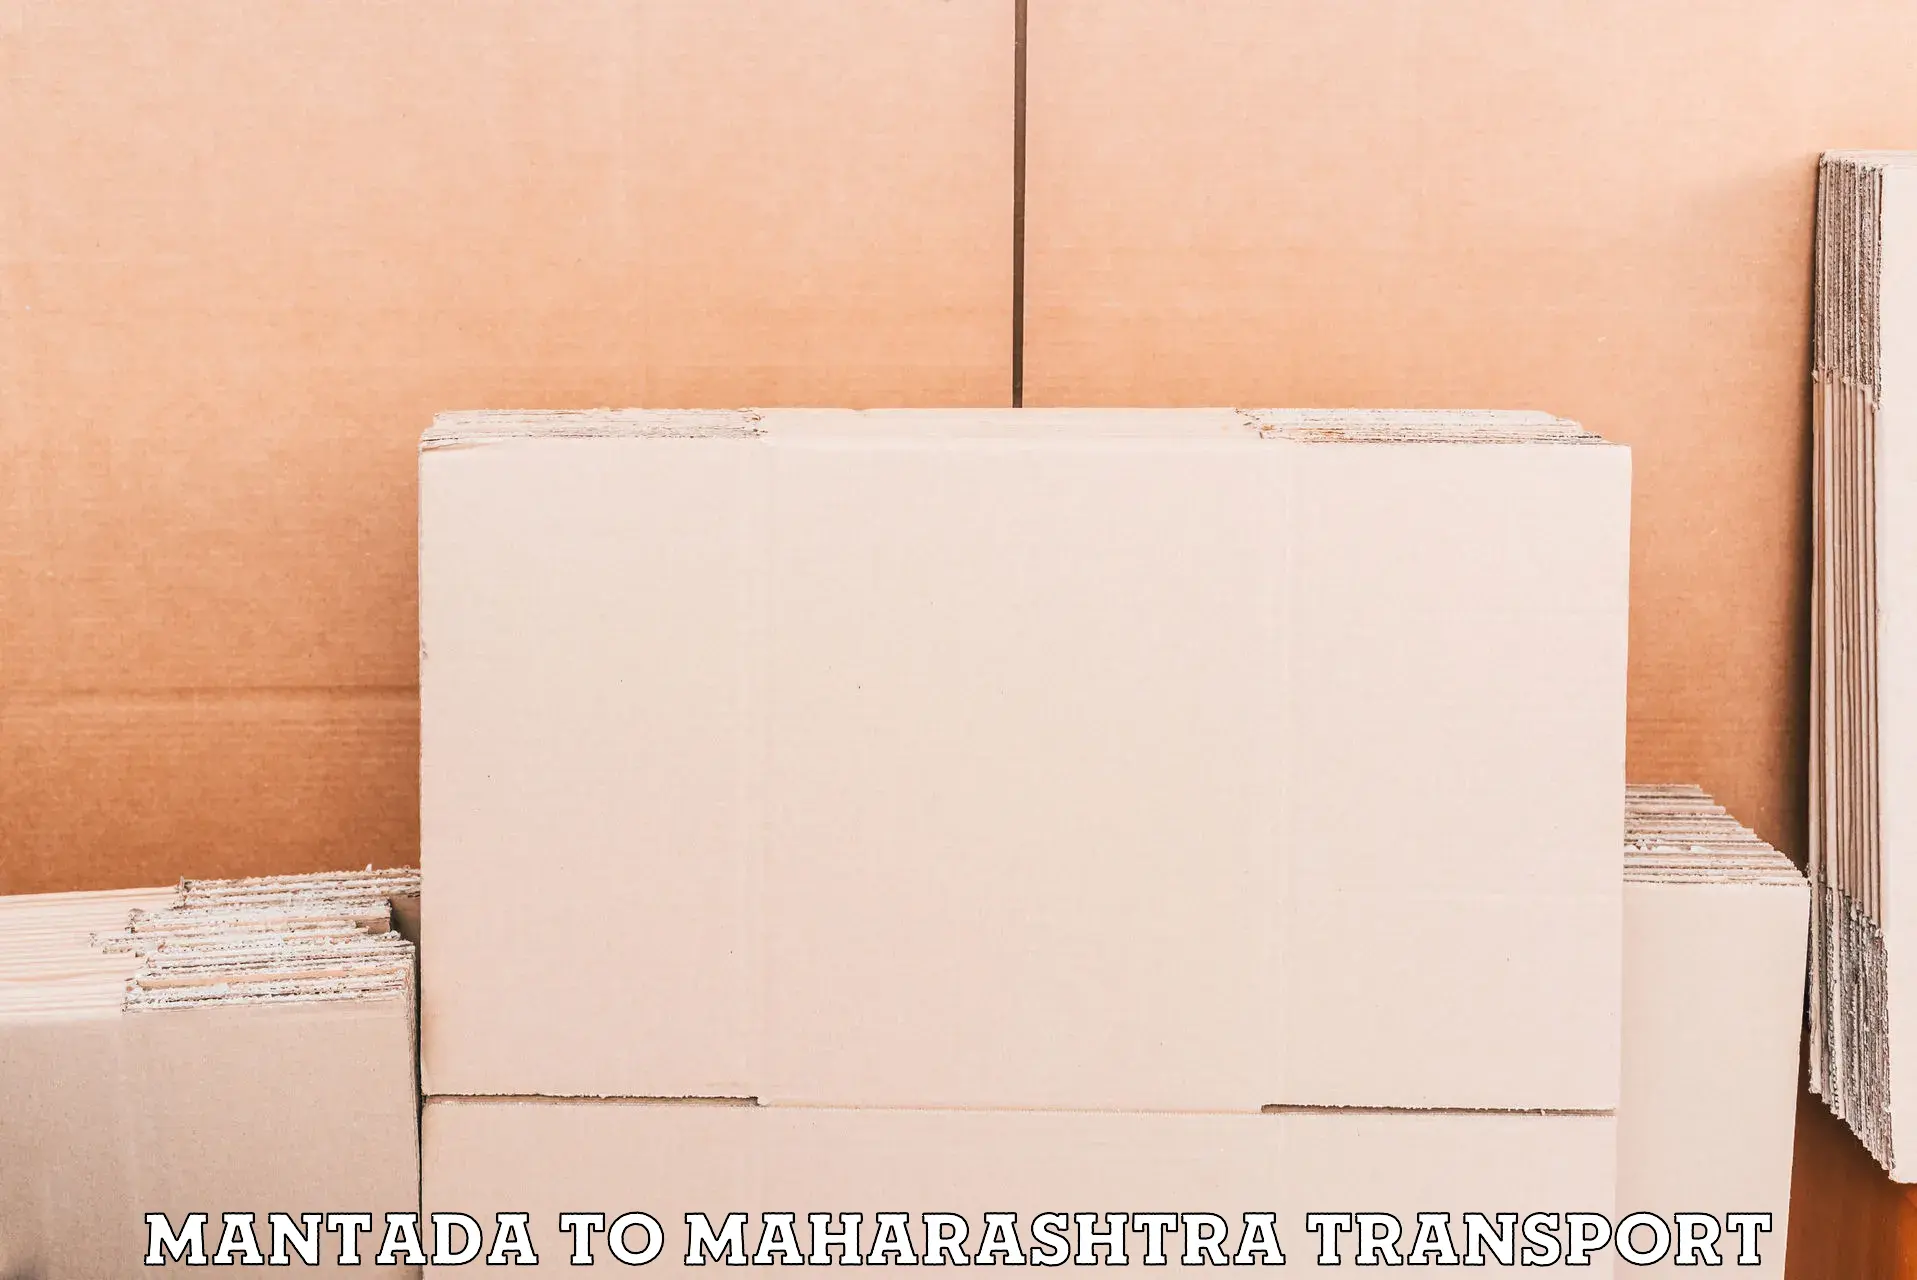 Container transport service Mantada to Naldurg